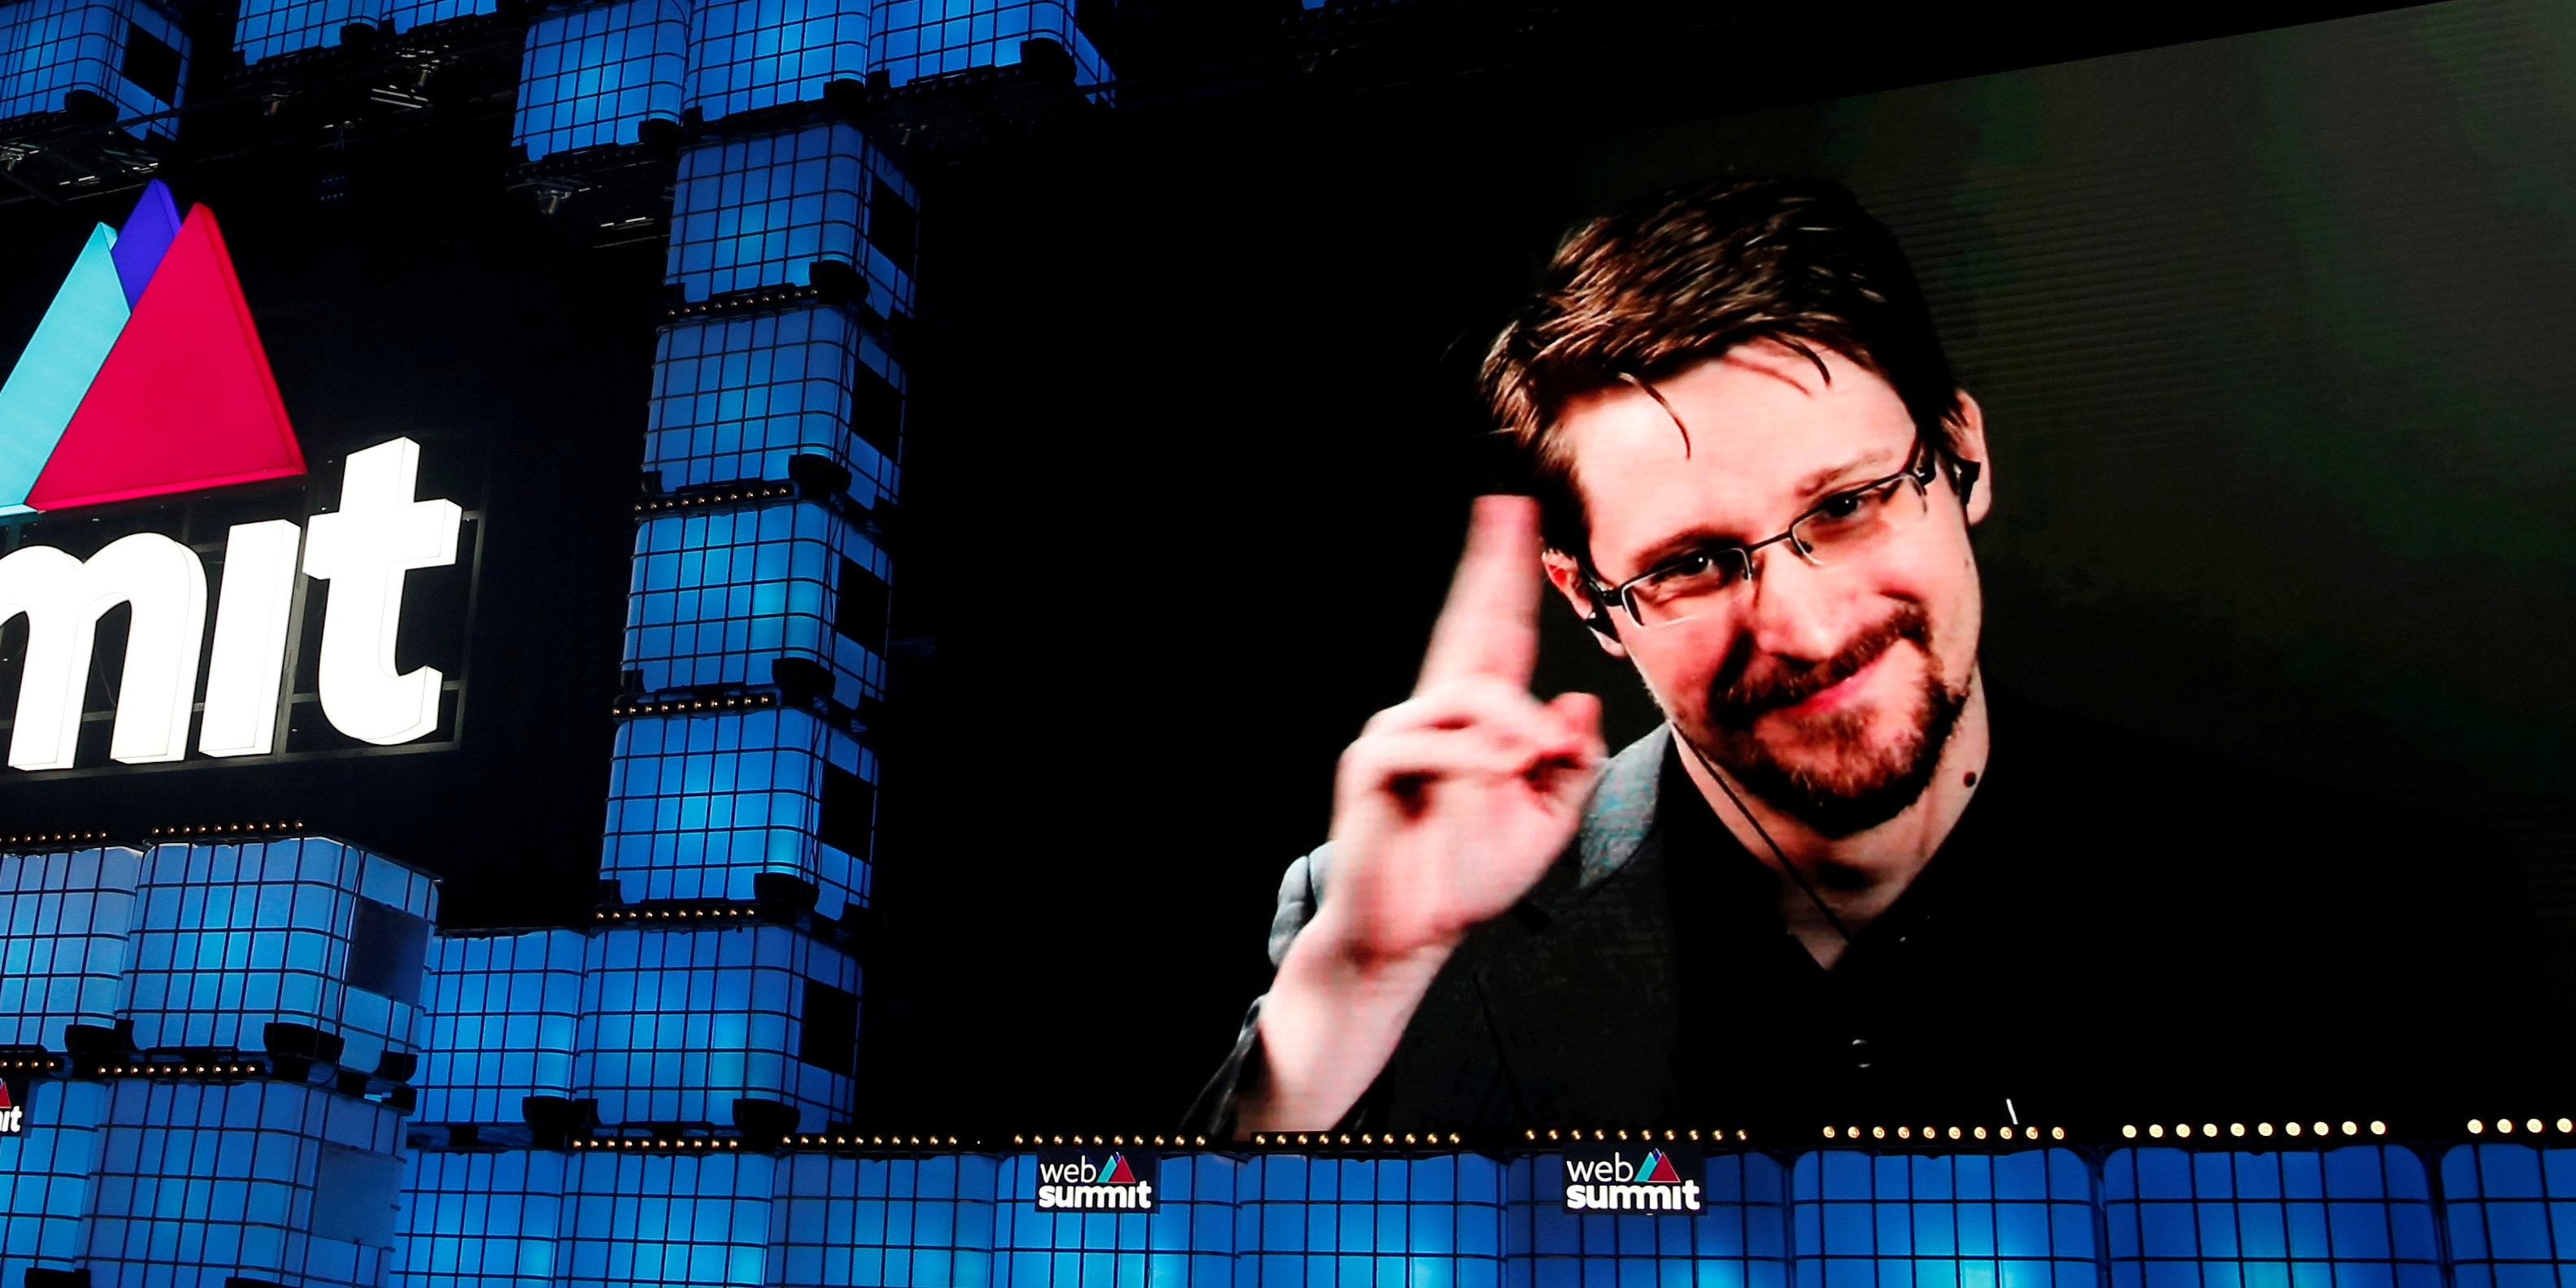 Le programme de surveillance de la NSA révélé par Snowden était illégal, juge un tribunal américain